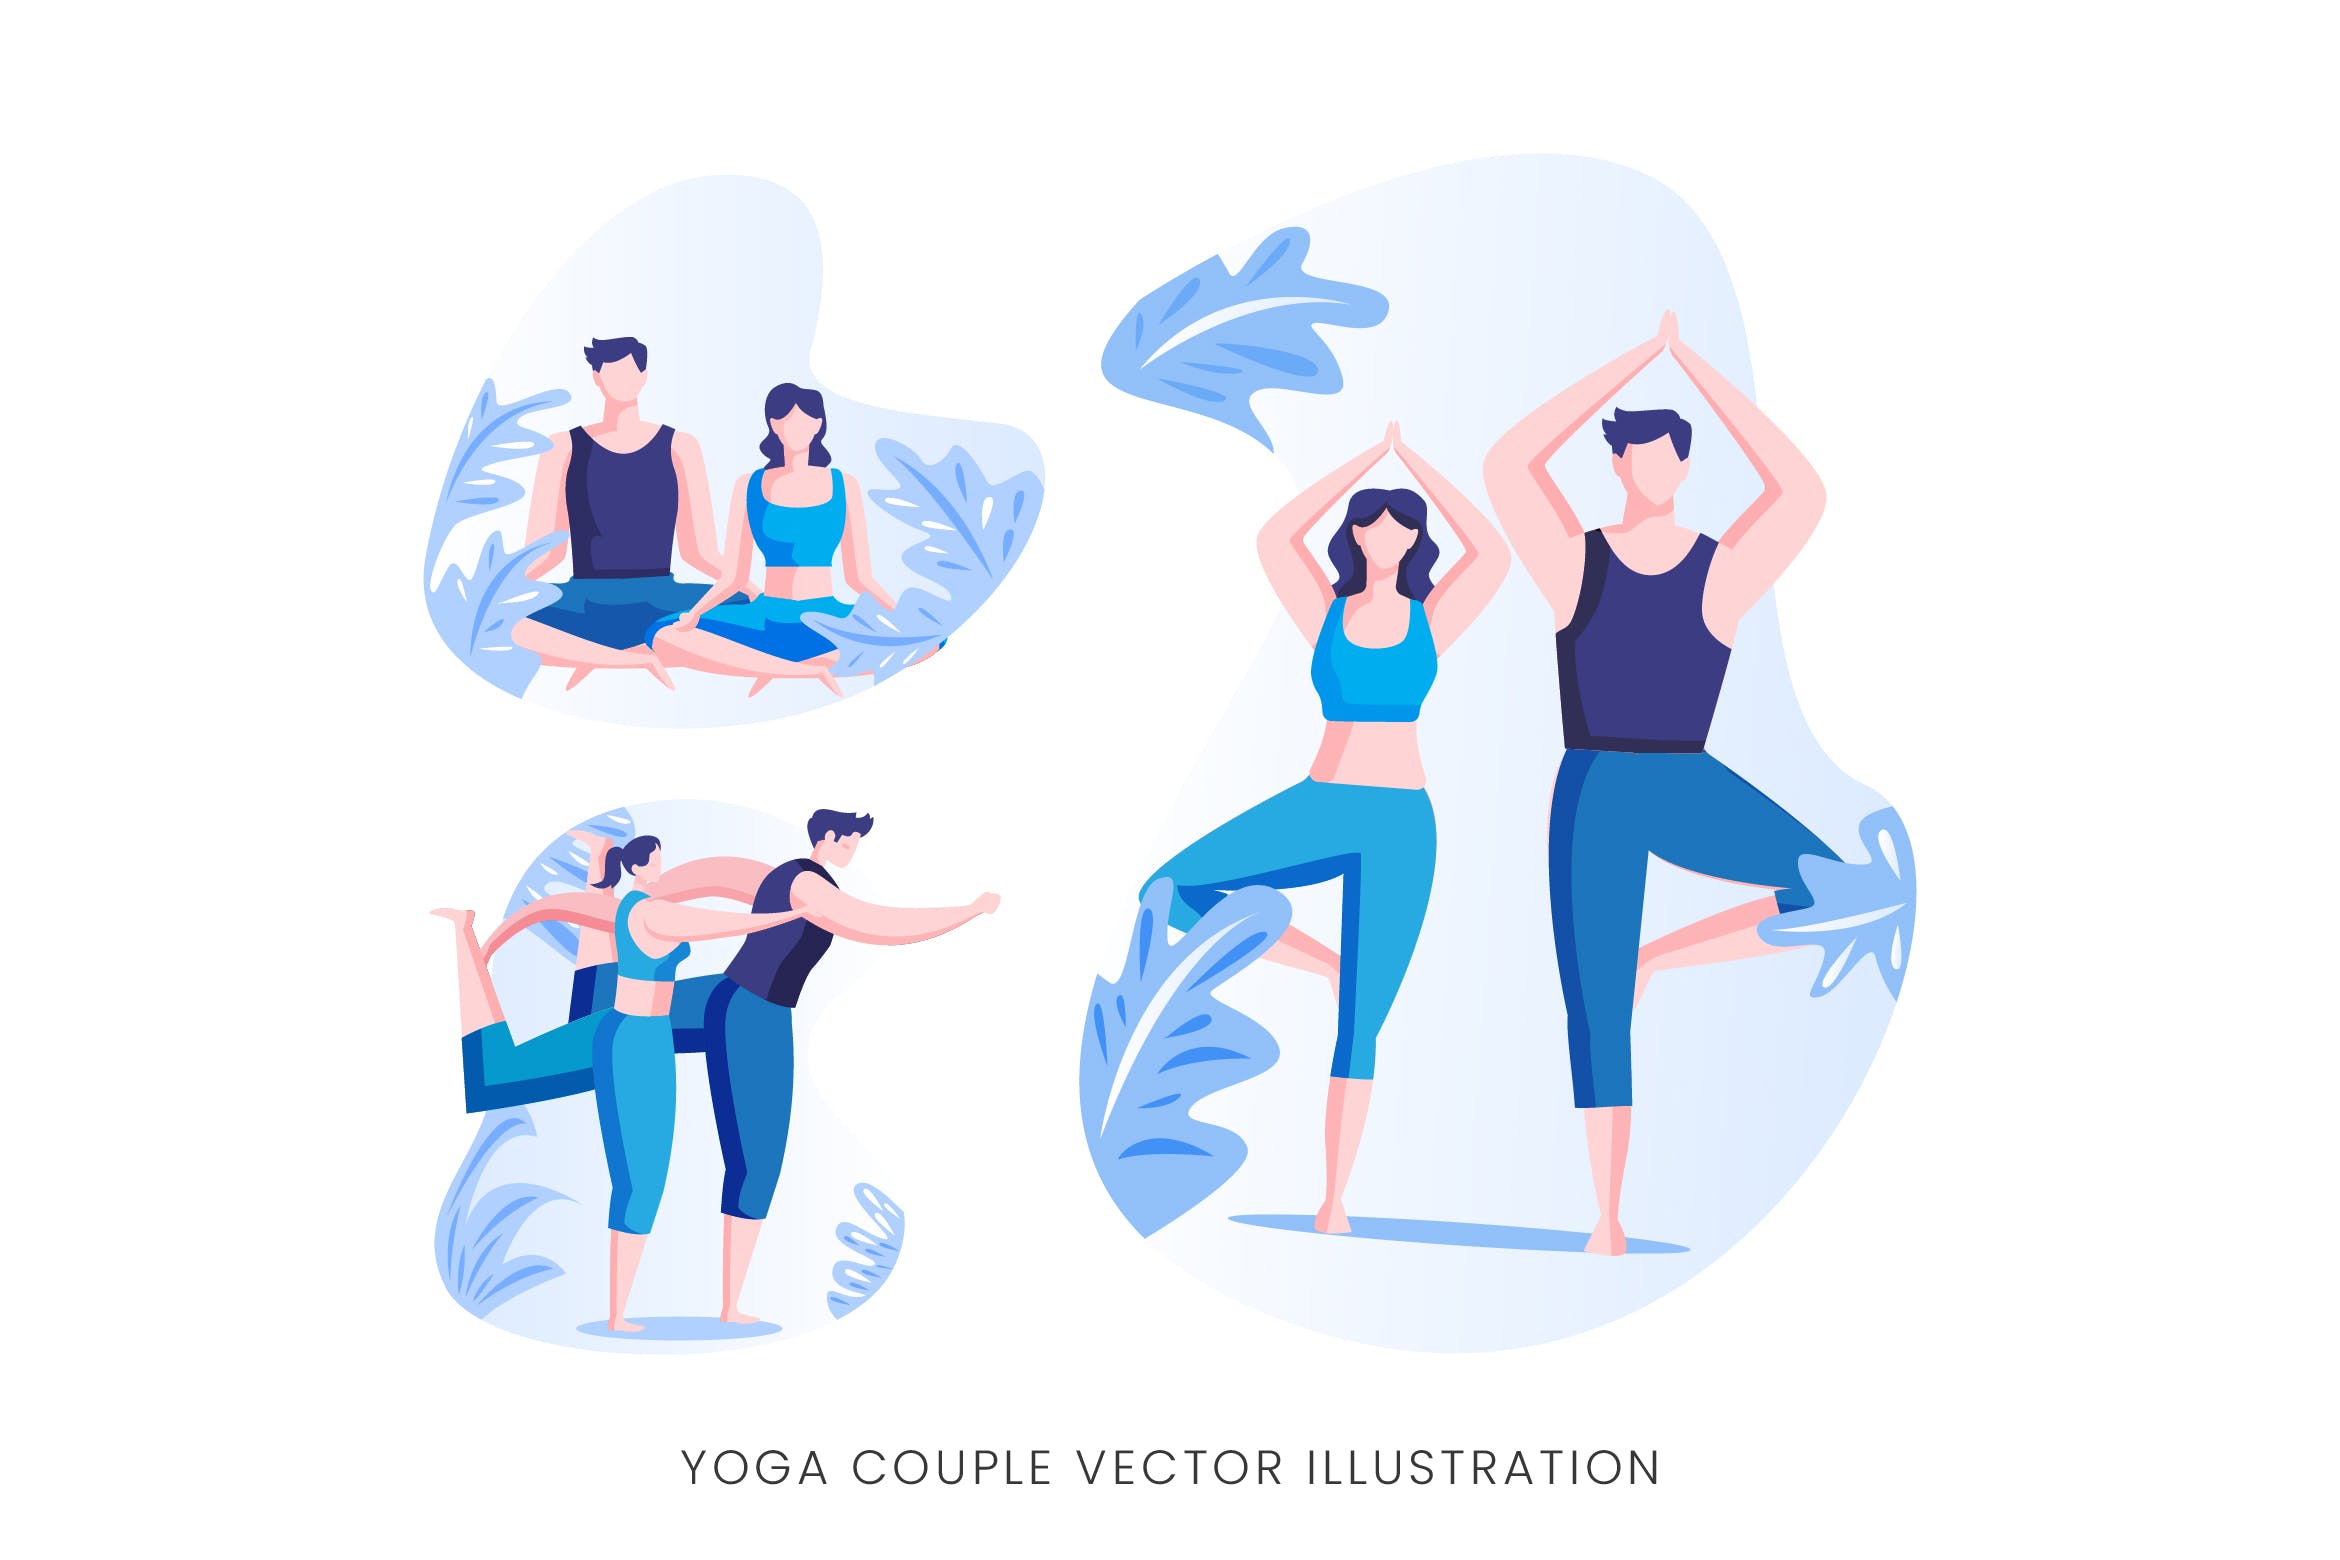 瑜珈情侣人物形象矢量手绘第一素材精选设计素材 Yoga Couple Vector Character Set插图